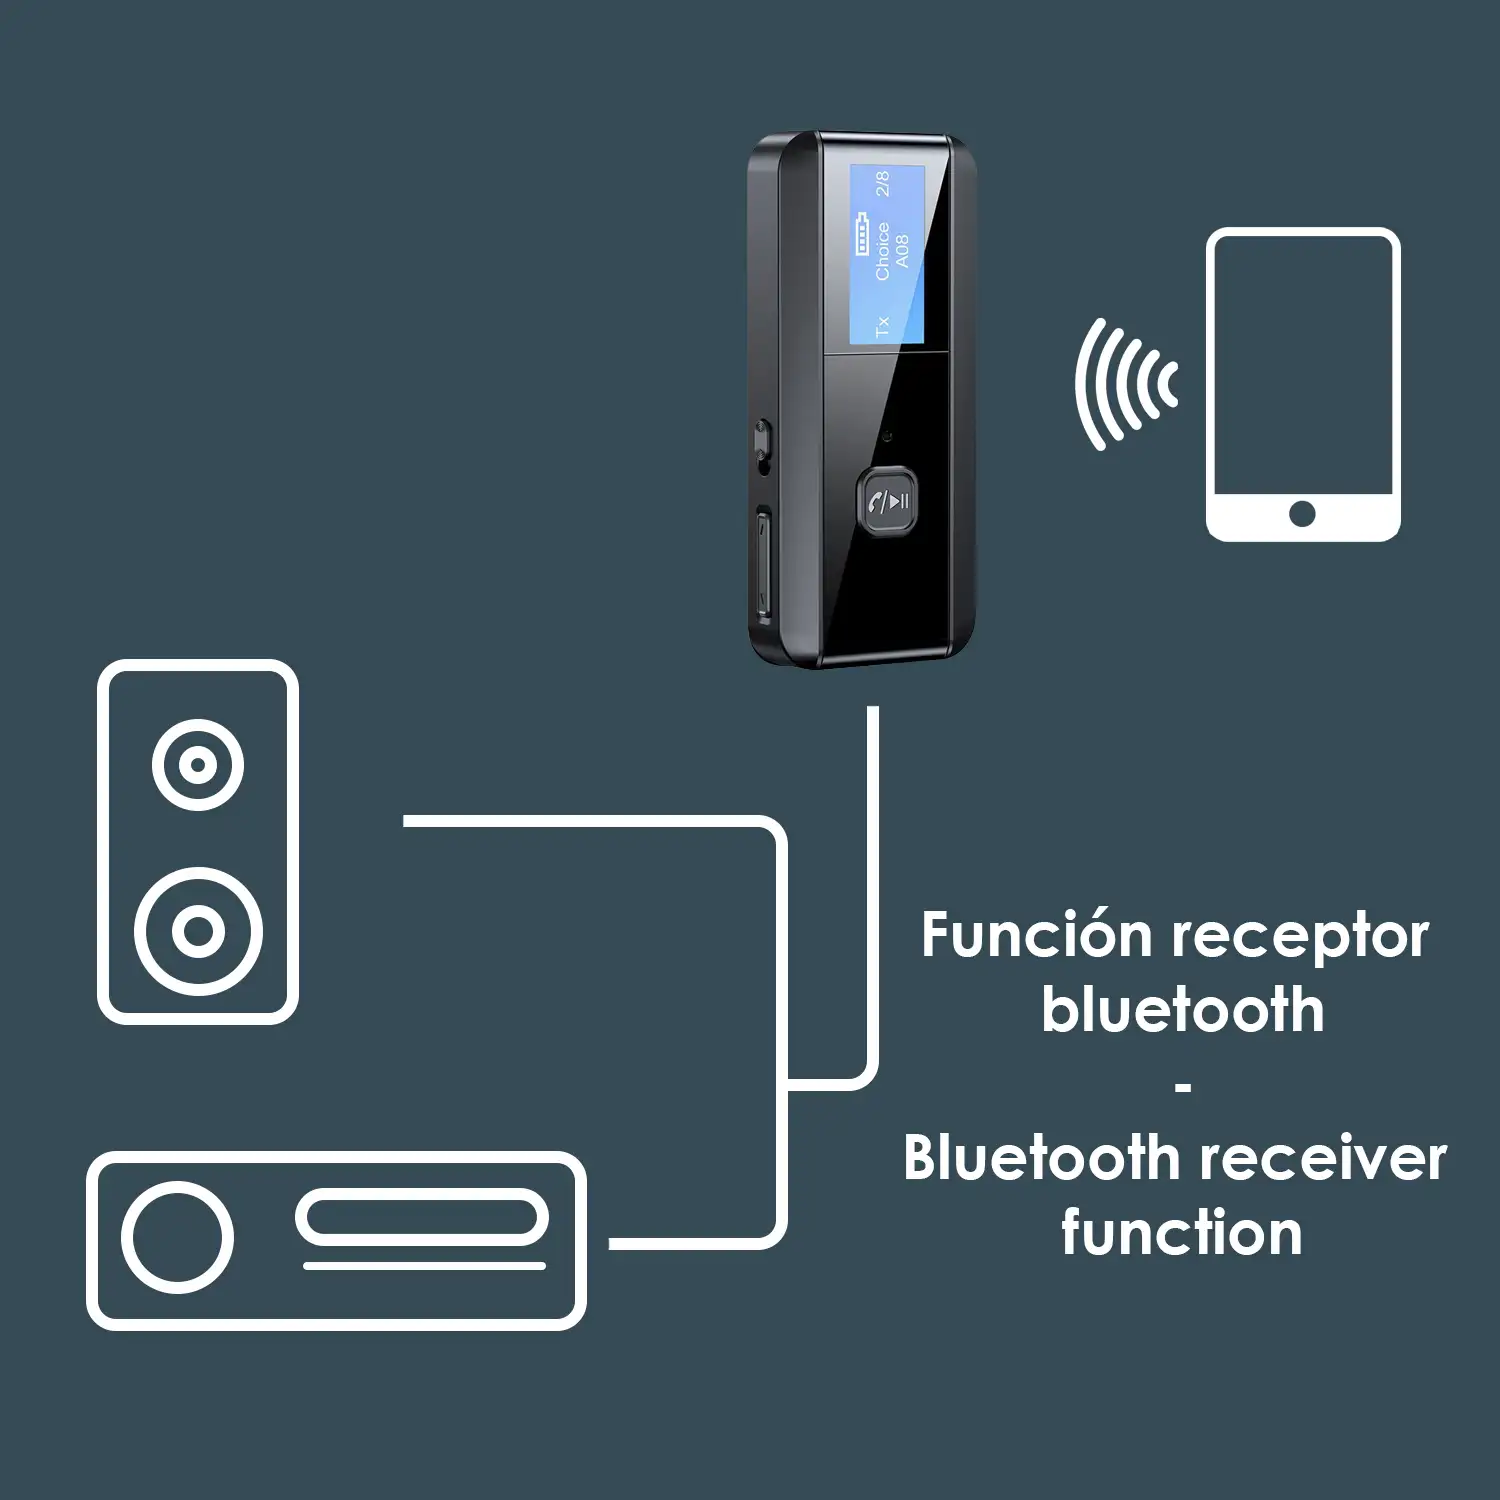 Emisor y receptor Bluetooth 5.0 C29 con función manos libres. Pantalla LCD. Conexión mediante minijack.